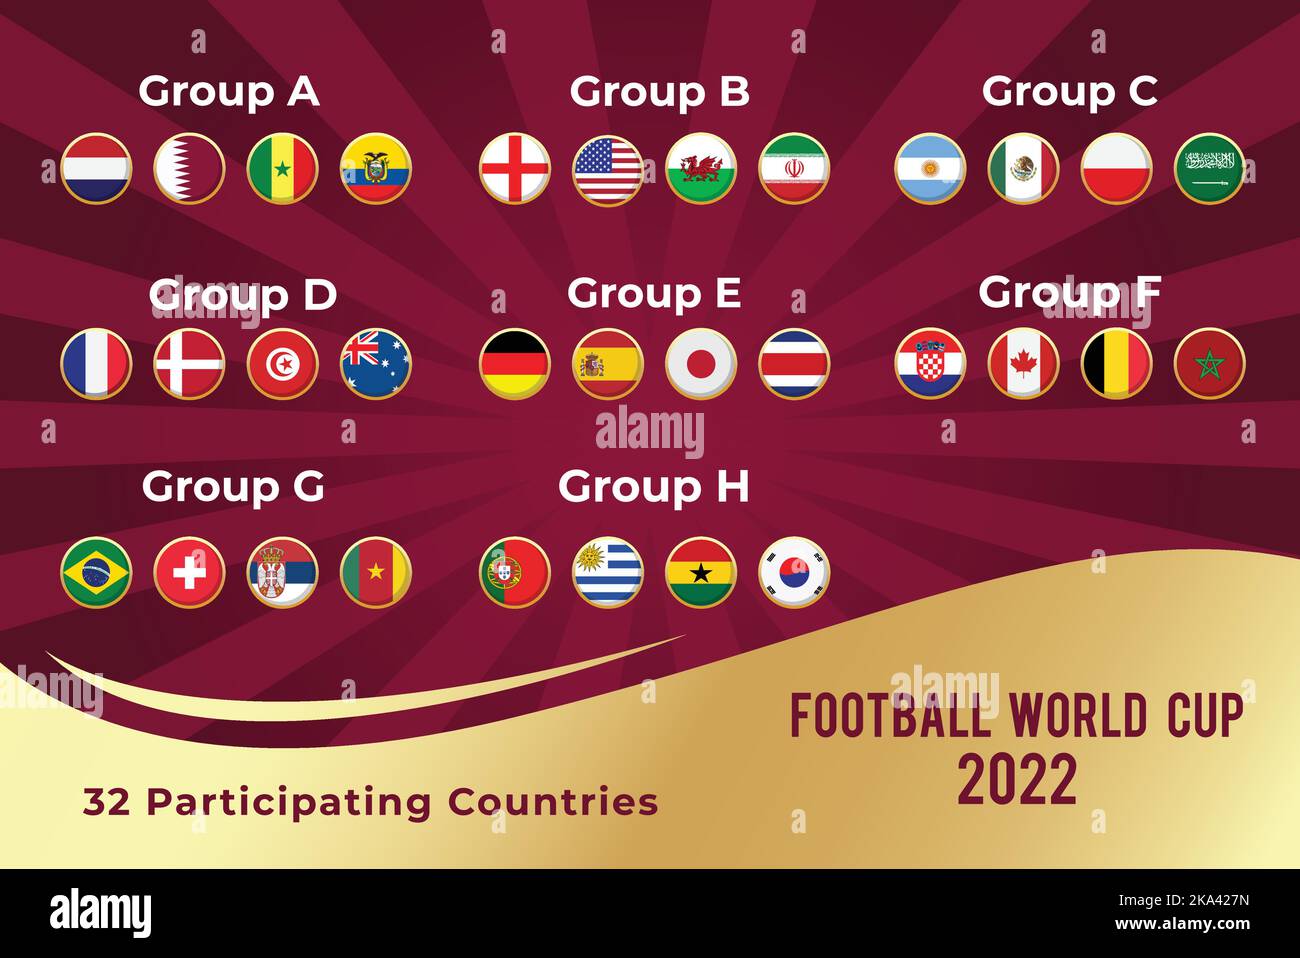 Alle teilnehmenden Länder Runde Flaggen mit goldener Grenze in Katar 2022 Fußball-Weltmeisterschaft , getrennt durch Gruppen Stock Vektor